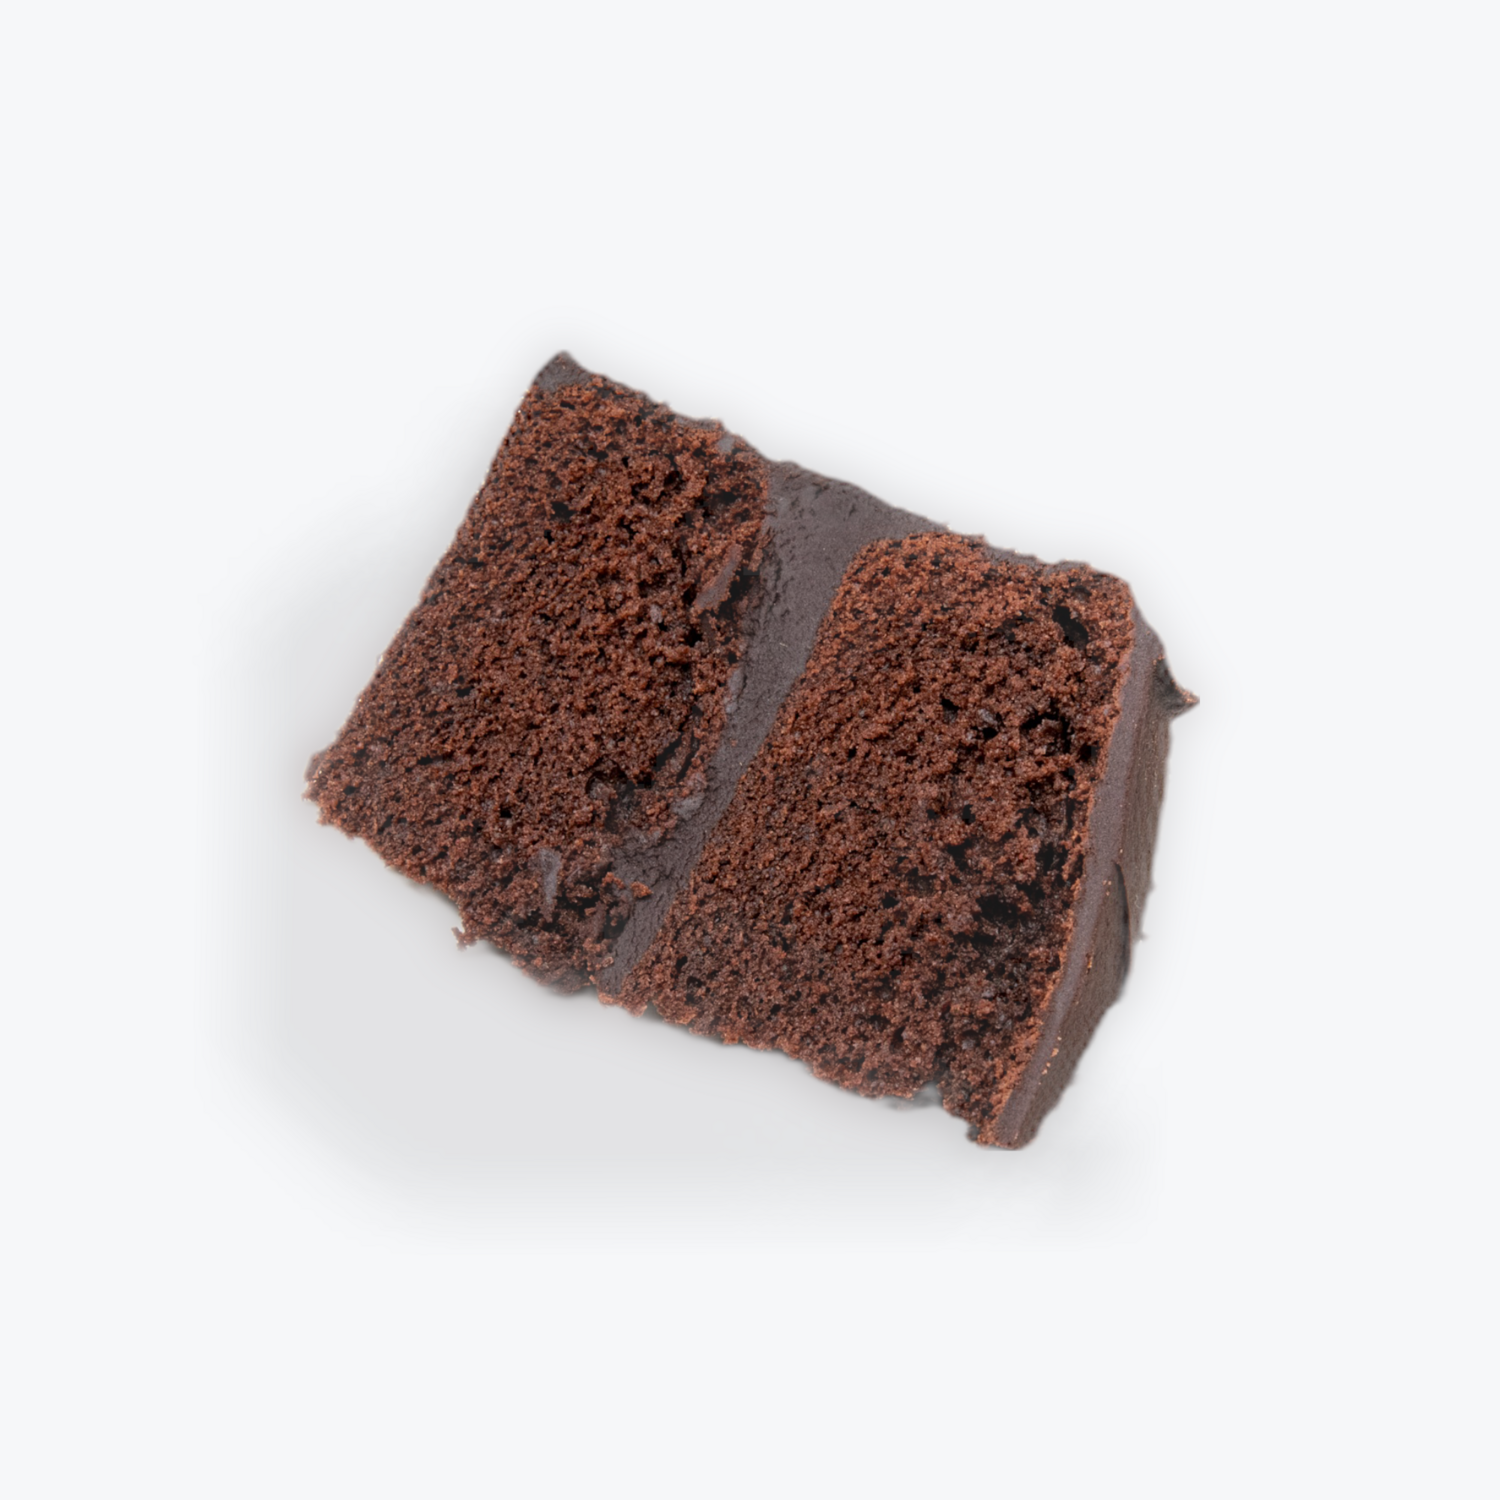 Chocolate Fudge Cake (Slice)